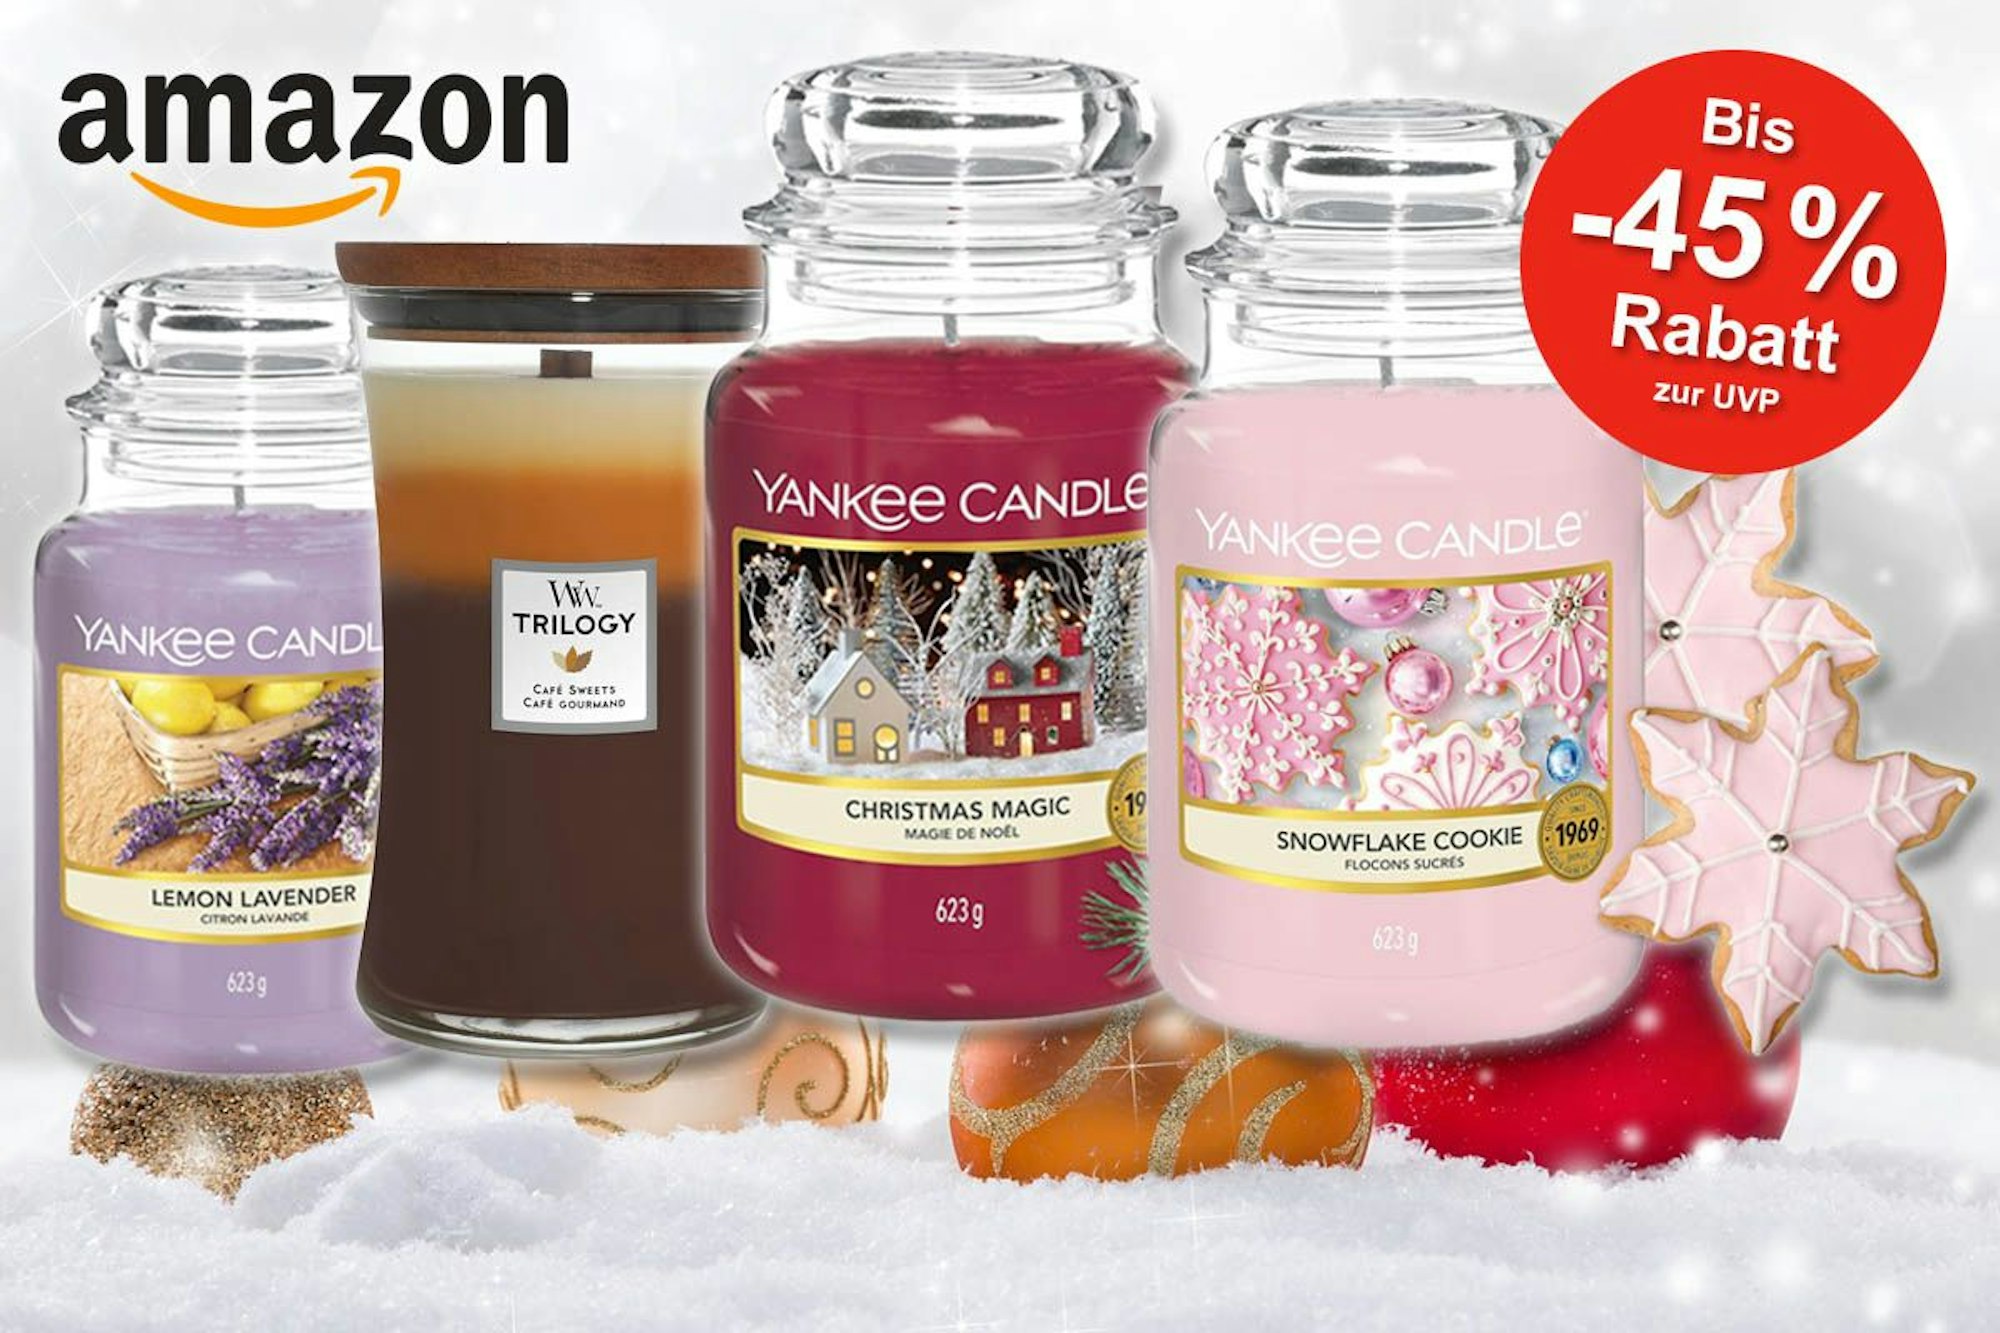 Yankee Candle und Woodwick Duftkerzen mit Amazon Logo und Schneelandschaft mit Weihnachtskugeln im Hintergrund.